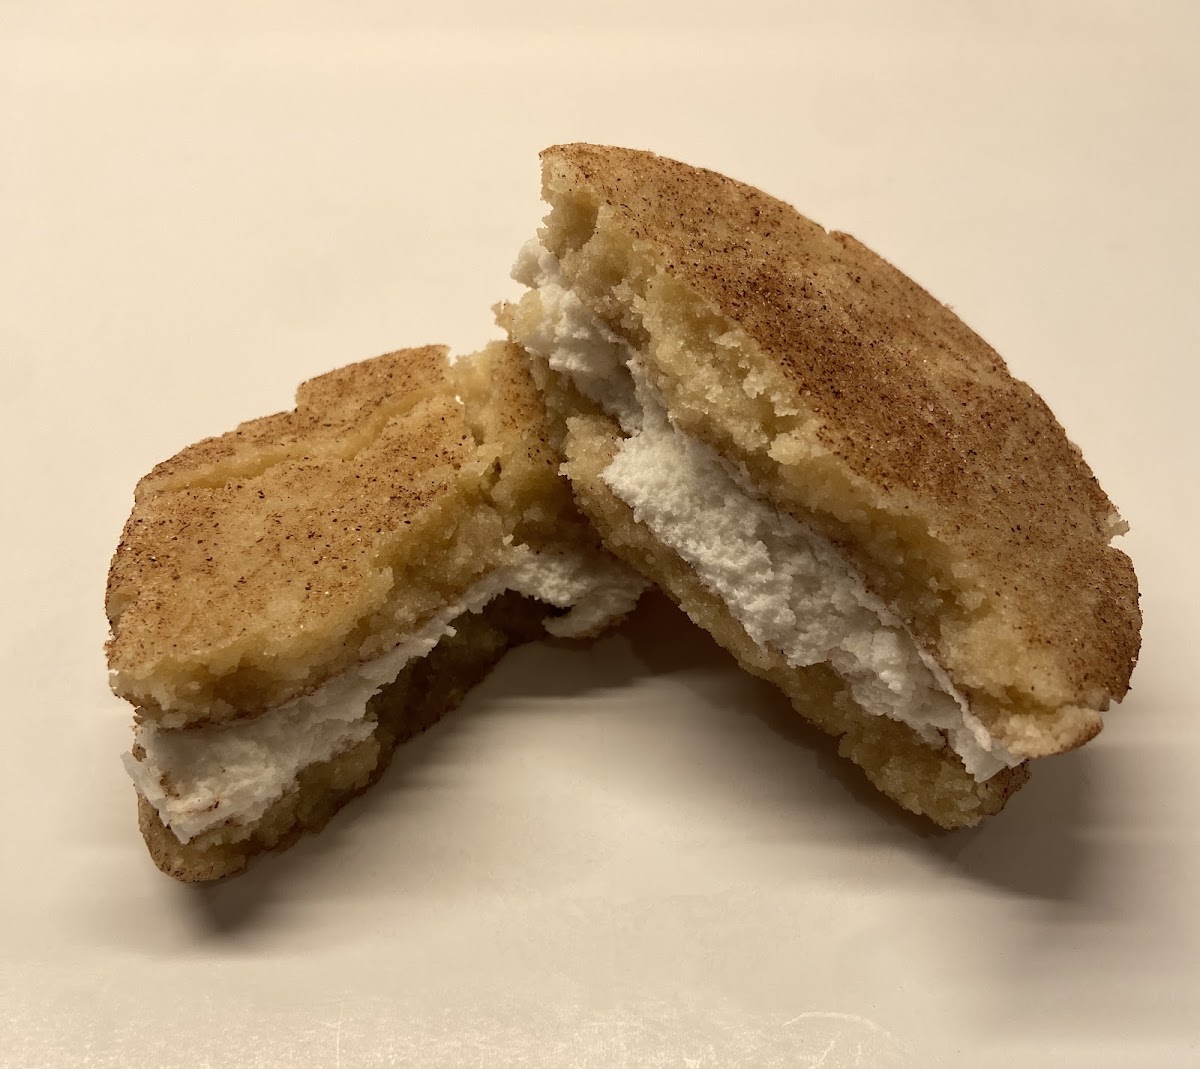 Snickerdoodle 1/2 Pound Sandwich Cookie - no top 9 allergen ingredients, gluten free and vegan